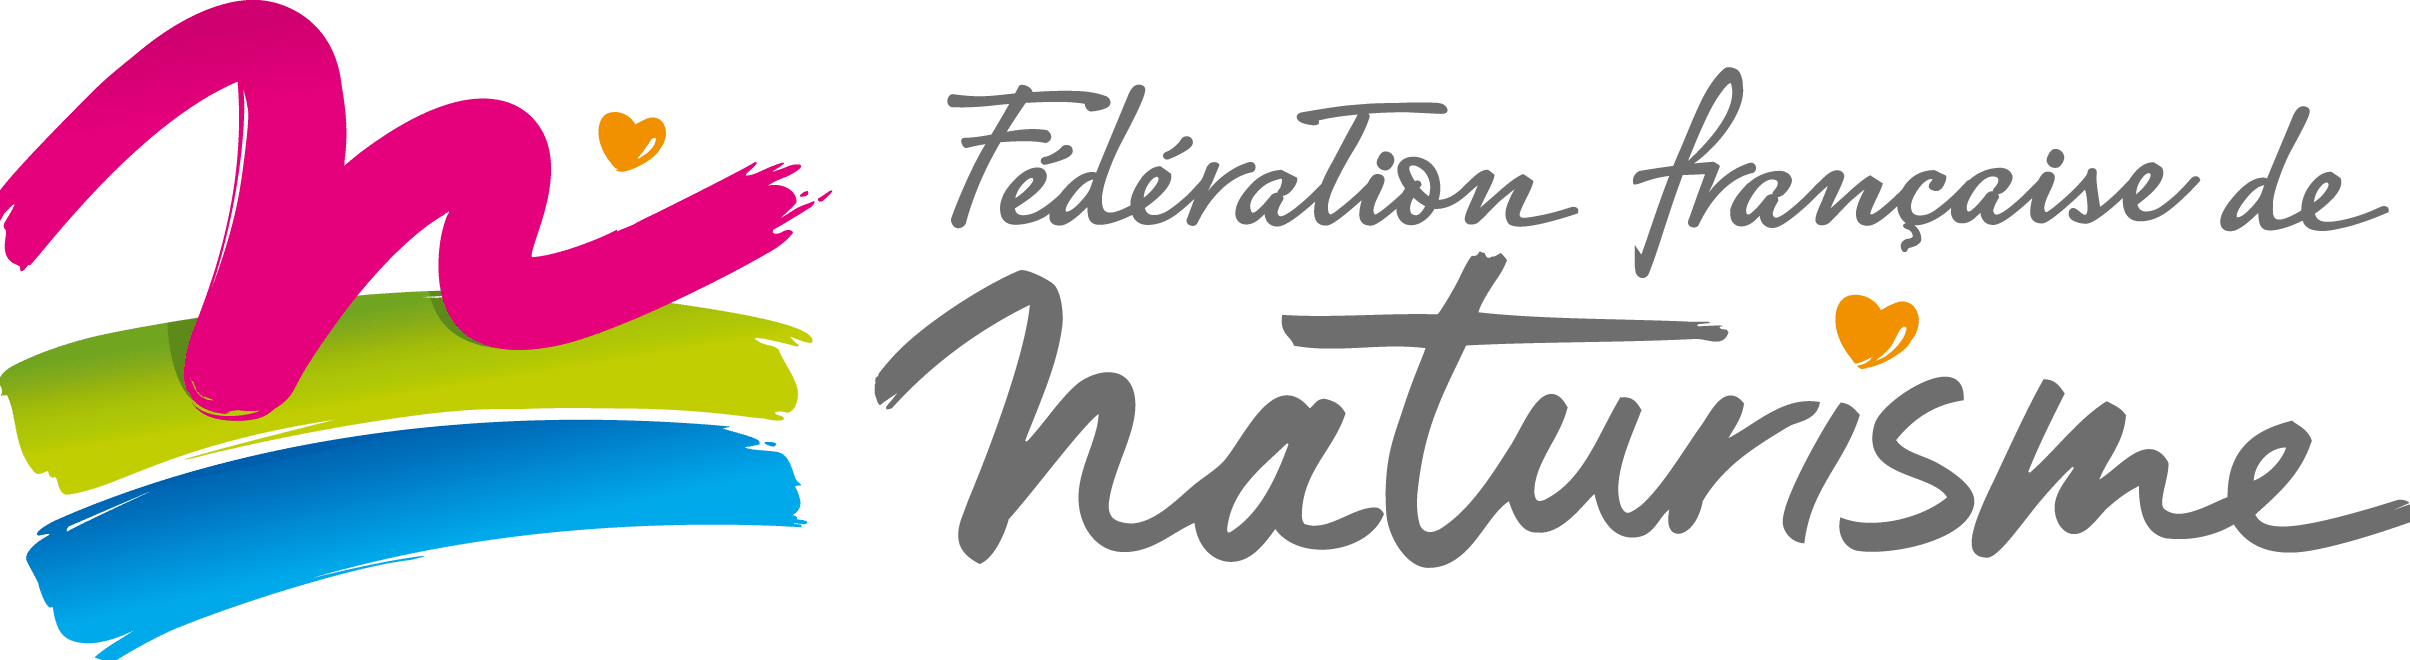 French Naturist Federation (FFN)